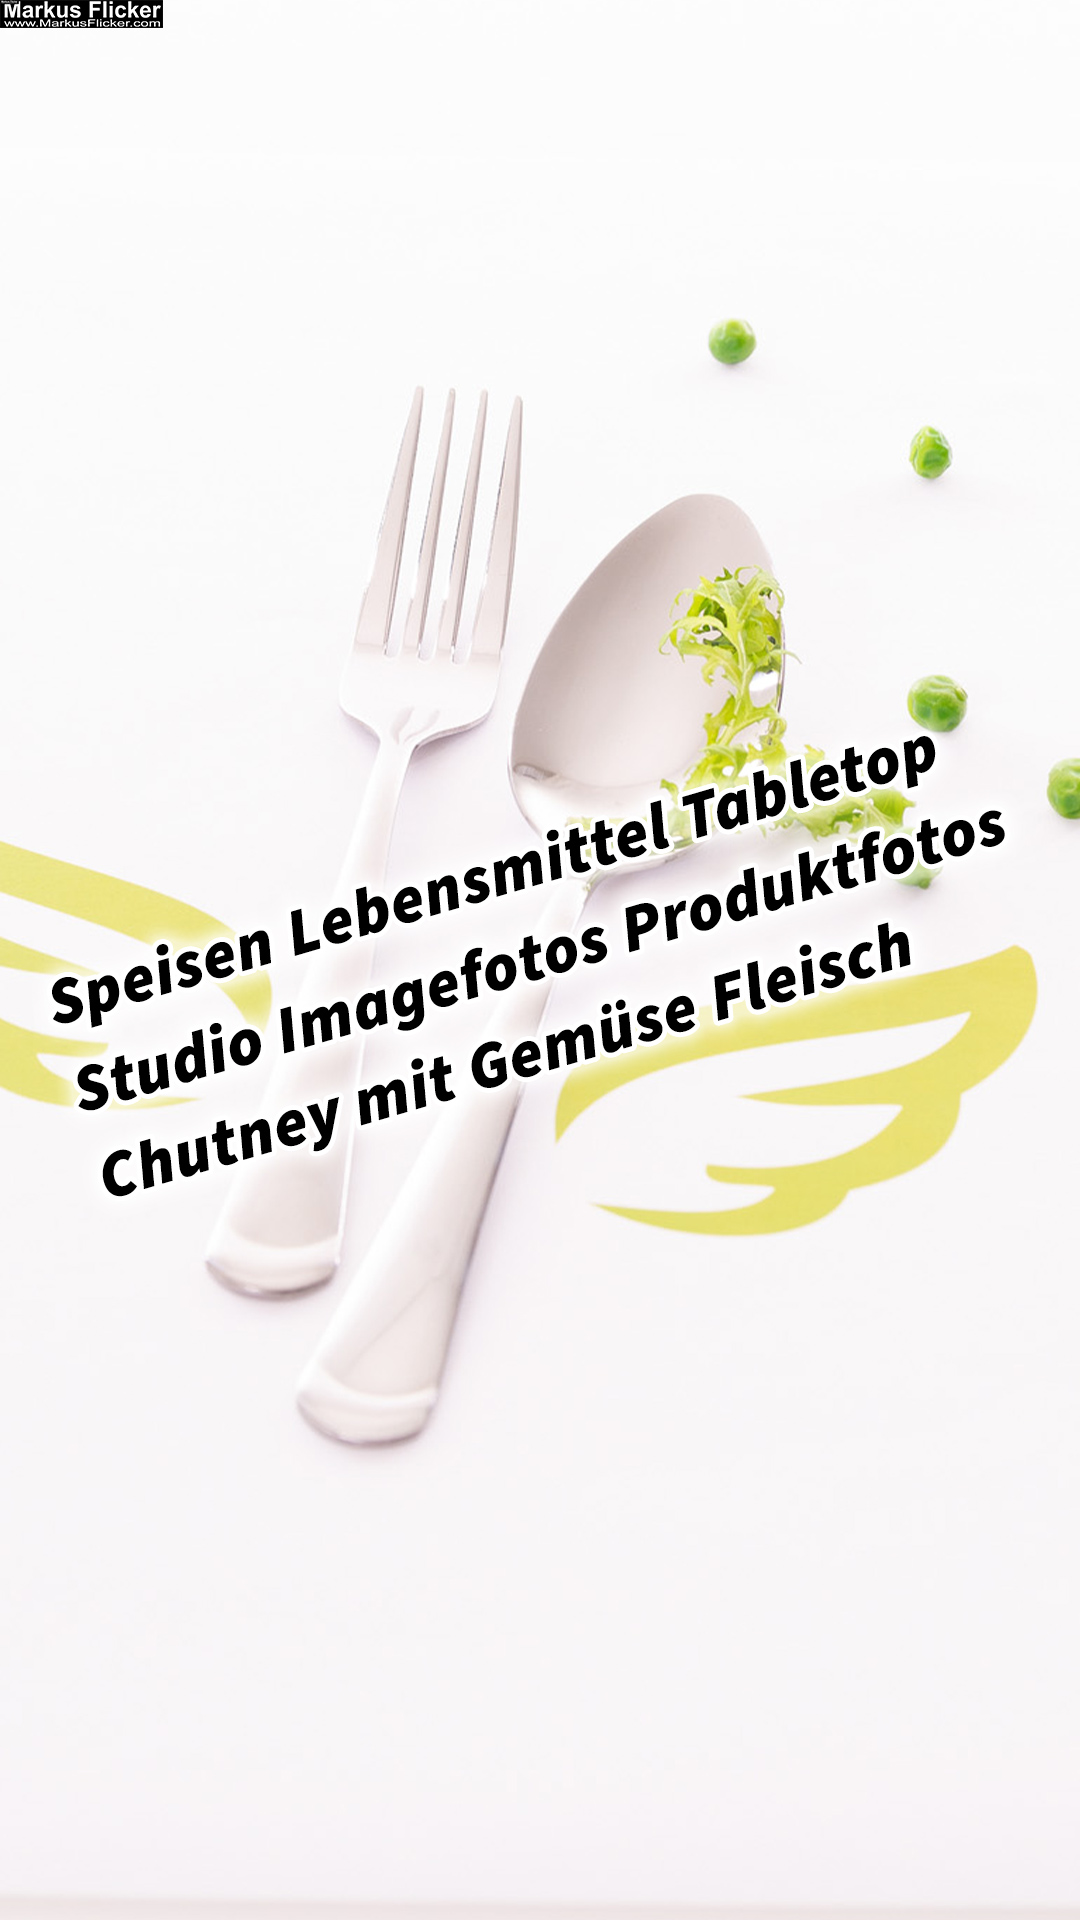 Speisen Lebensmittel Tabletop Studio Imagefotos Produktfotos Chutney mit Gemüse Fleisch